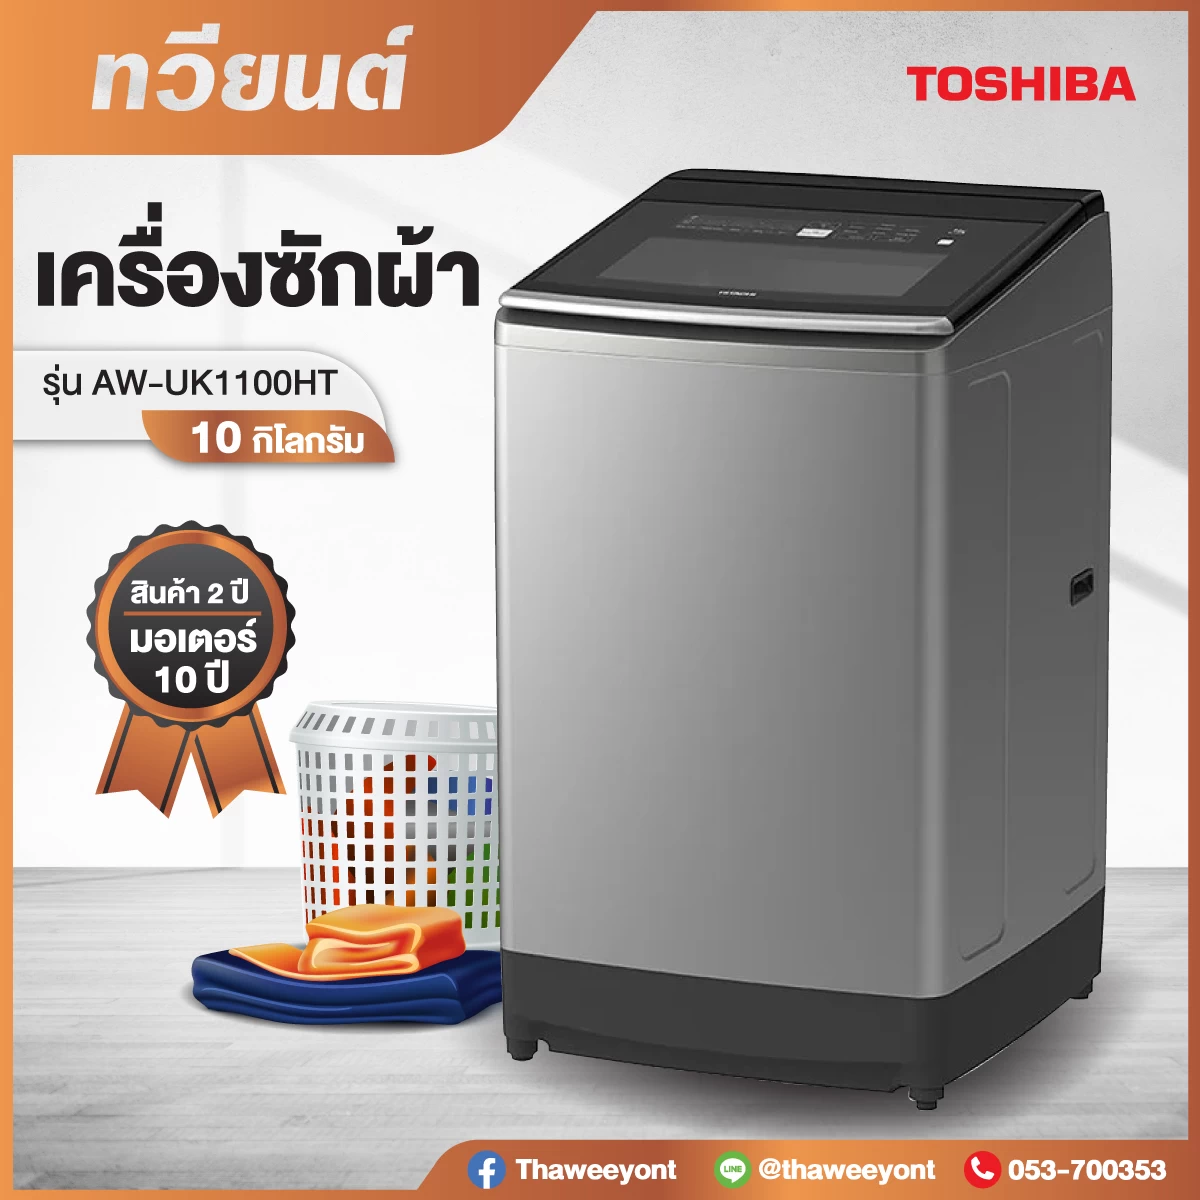 Toshiba เครื่องซักผ้าฝาบน รุ่น AW-UK1100HT (สีเทา) ขนาด 10 กก. Auto Tub Dry UK1100HT UK1100